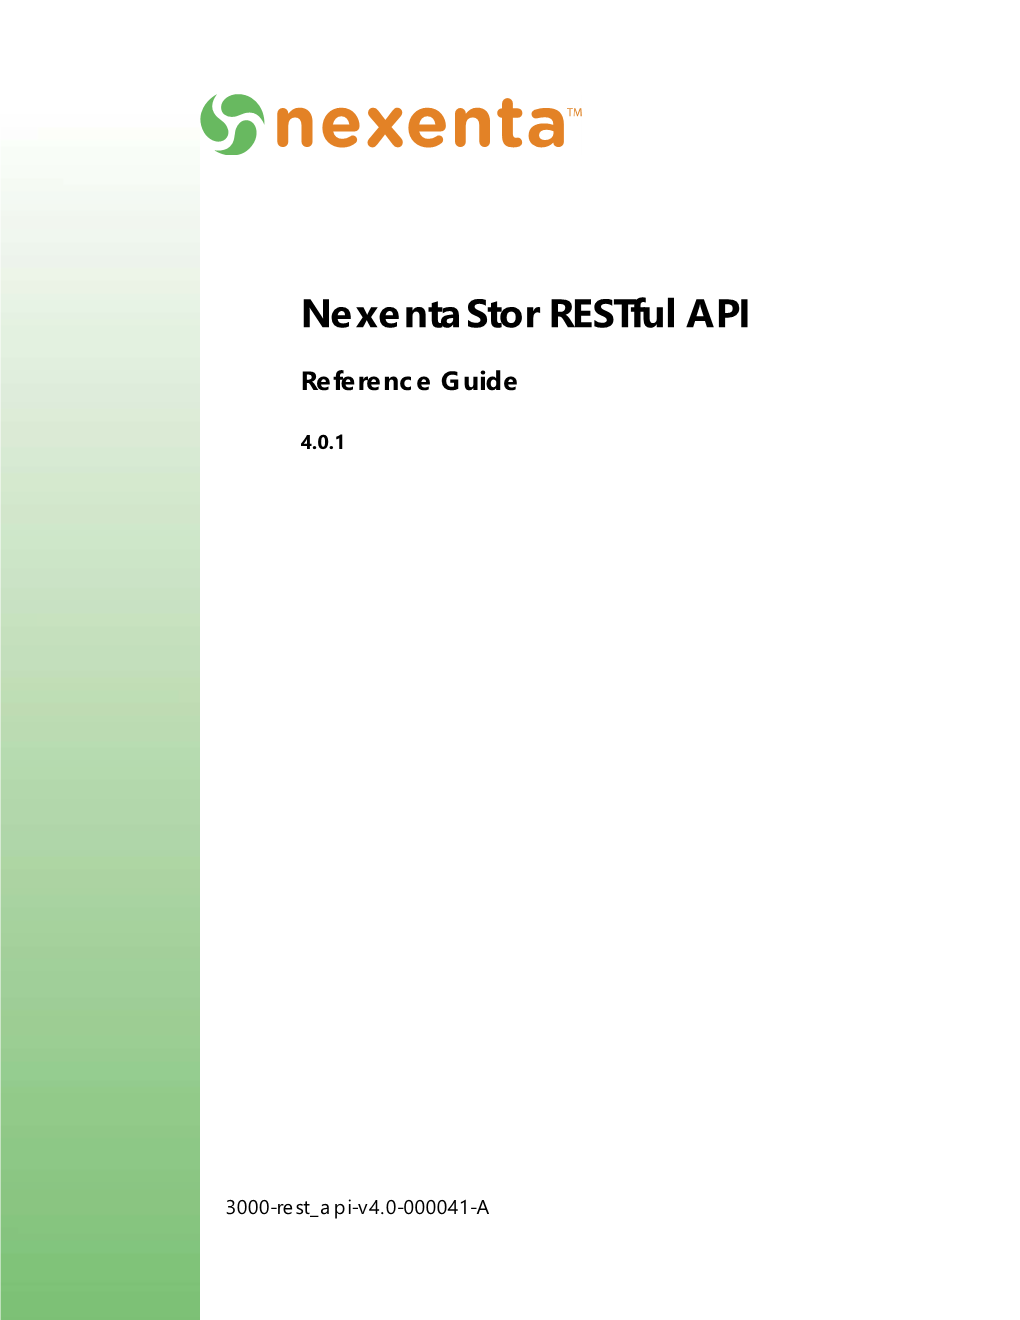 Nexentastor Restful API Reference Guide 4.0.1